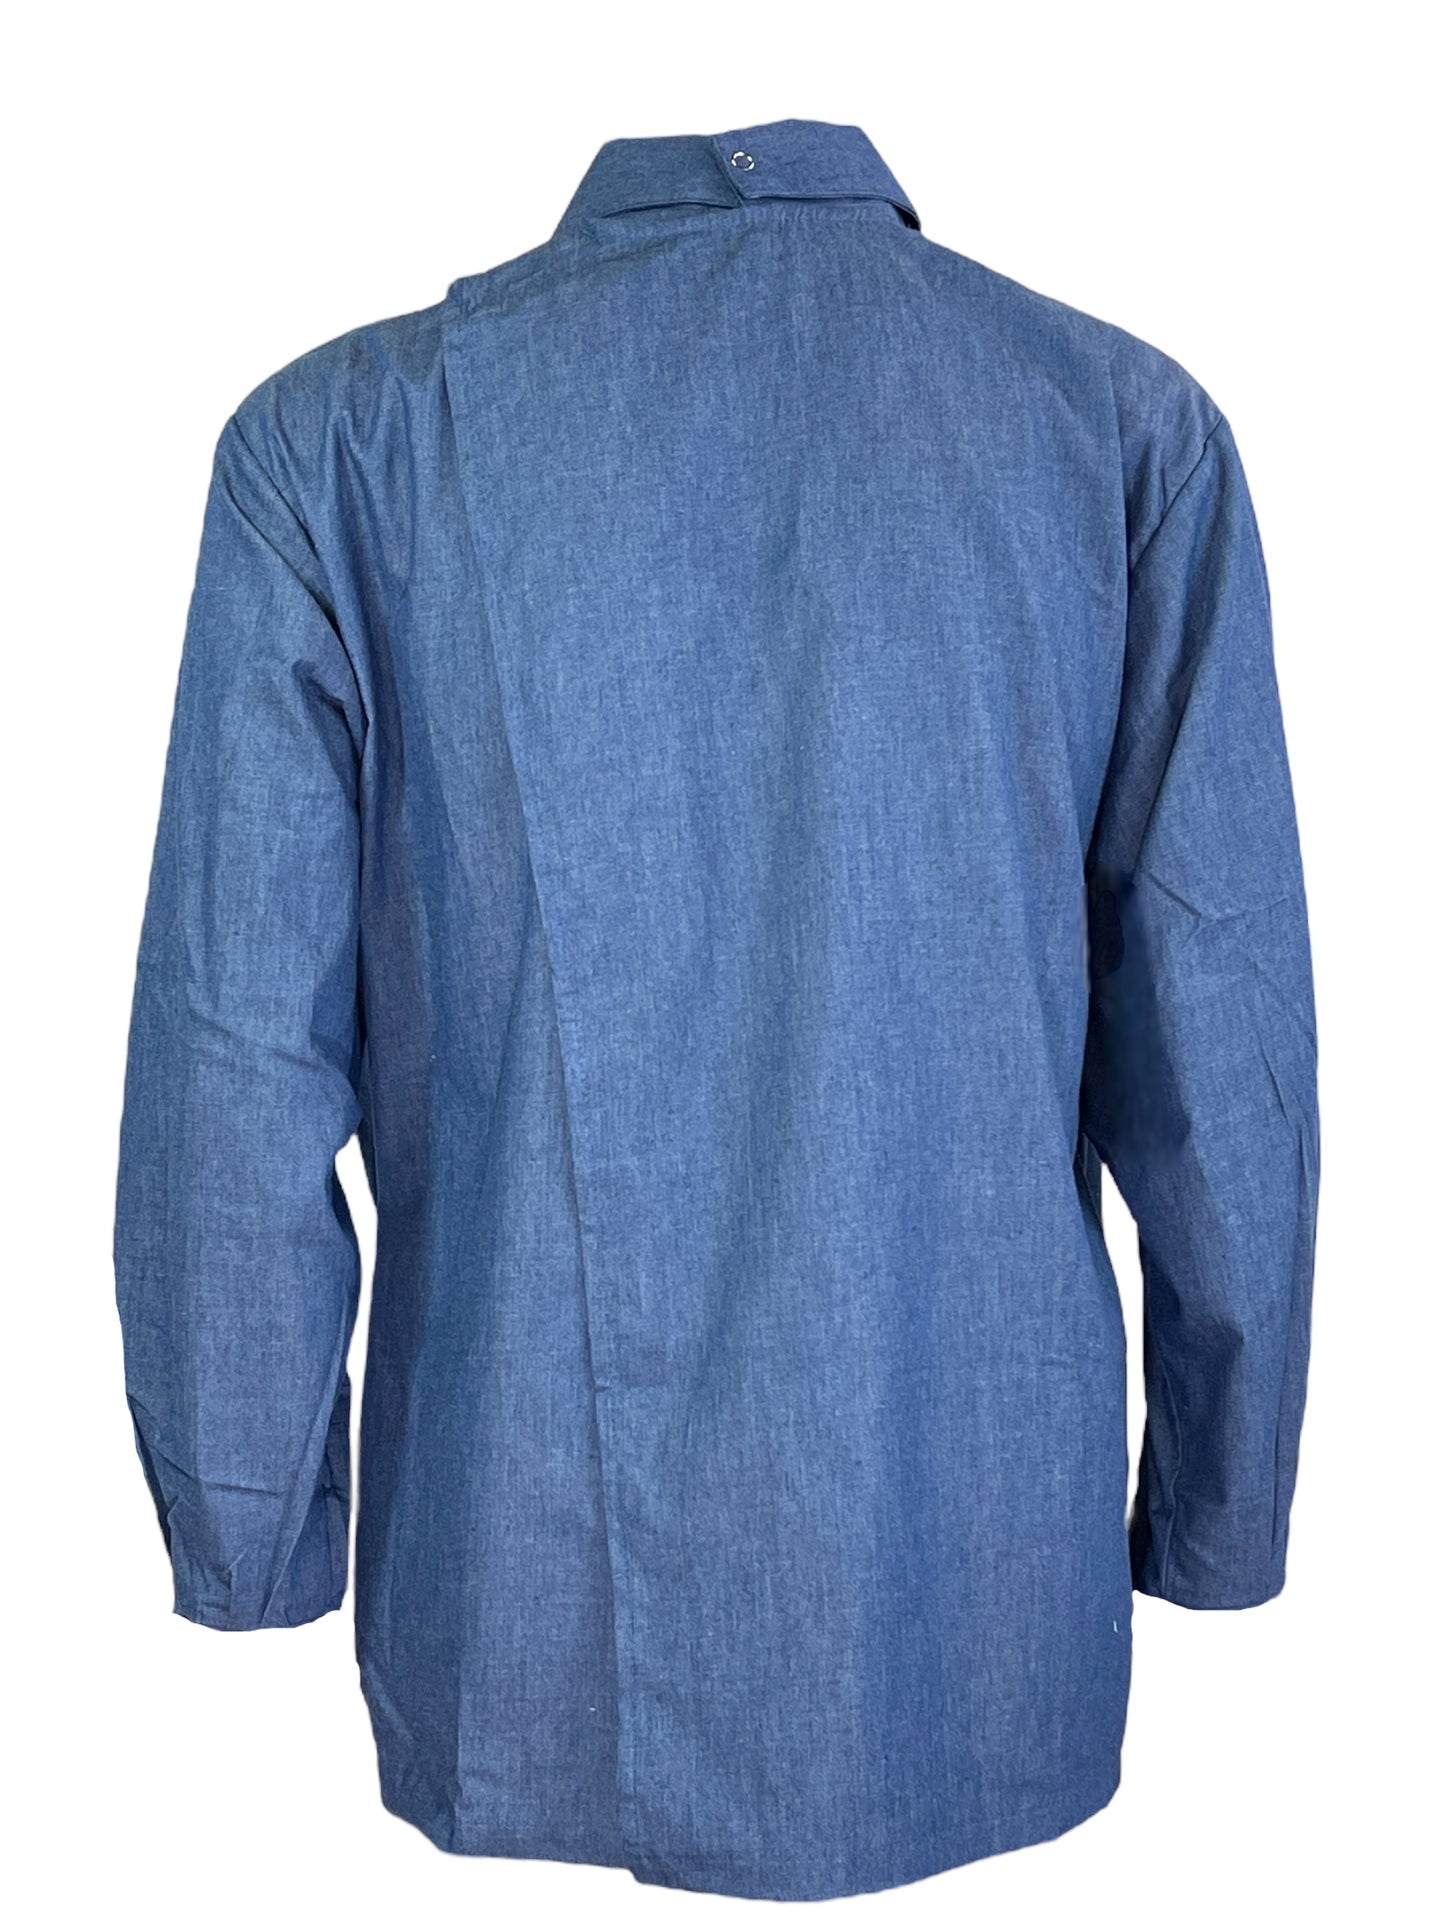 Adaptive Open Back Cotton Button Shirt, Lightweight Denim